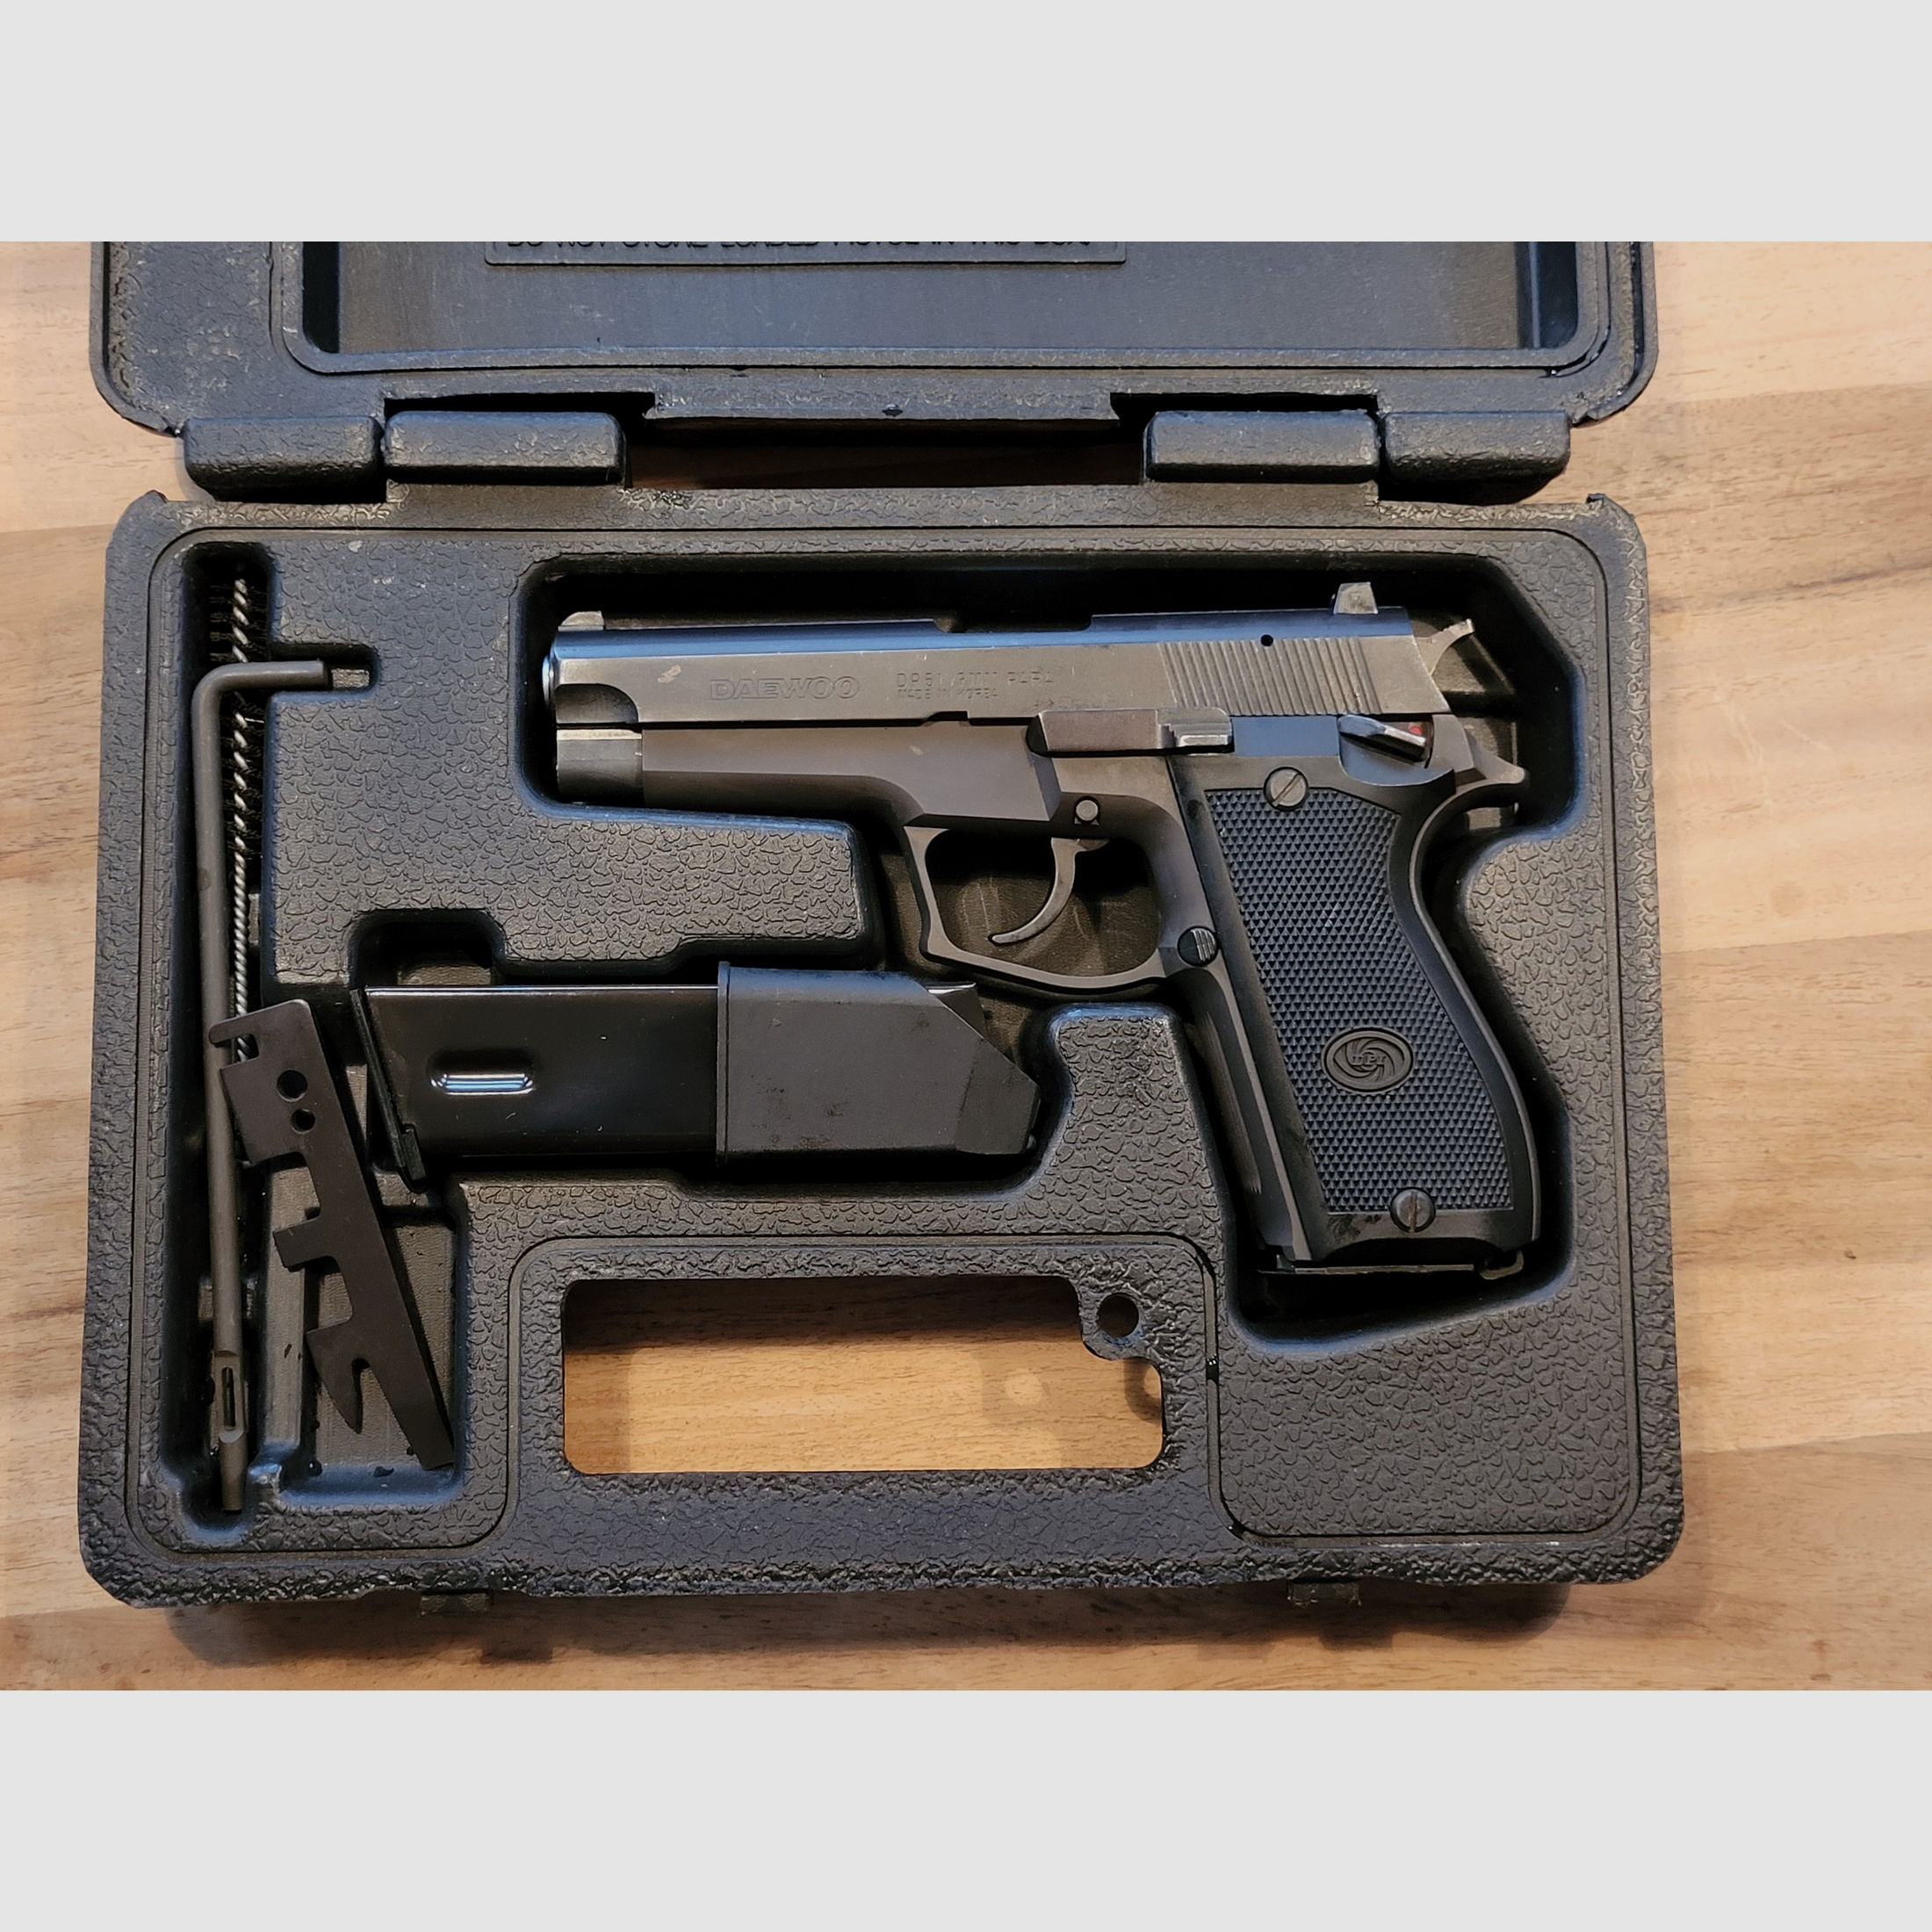 DAEWOO DP 51, Gebrauchtwaffe, Pistole, 9mm Luger